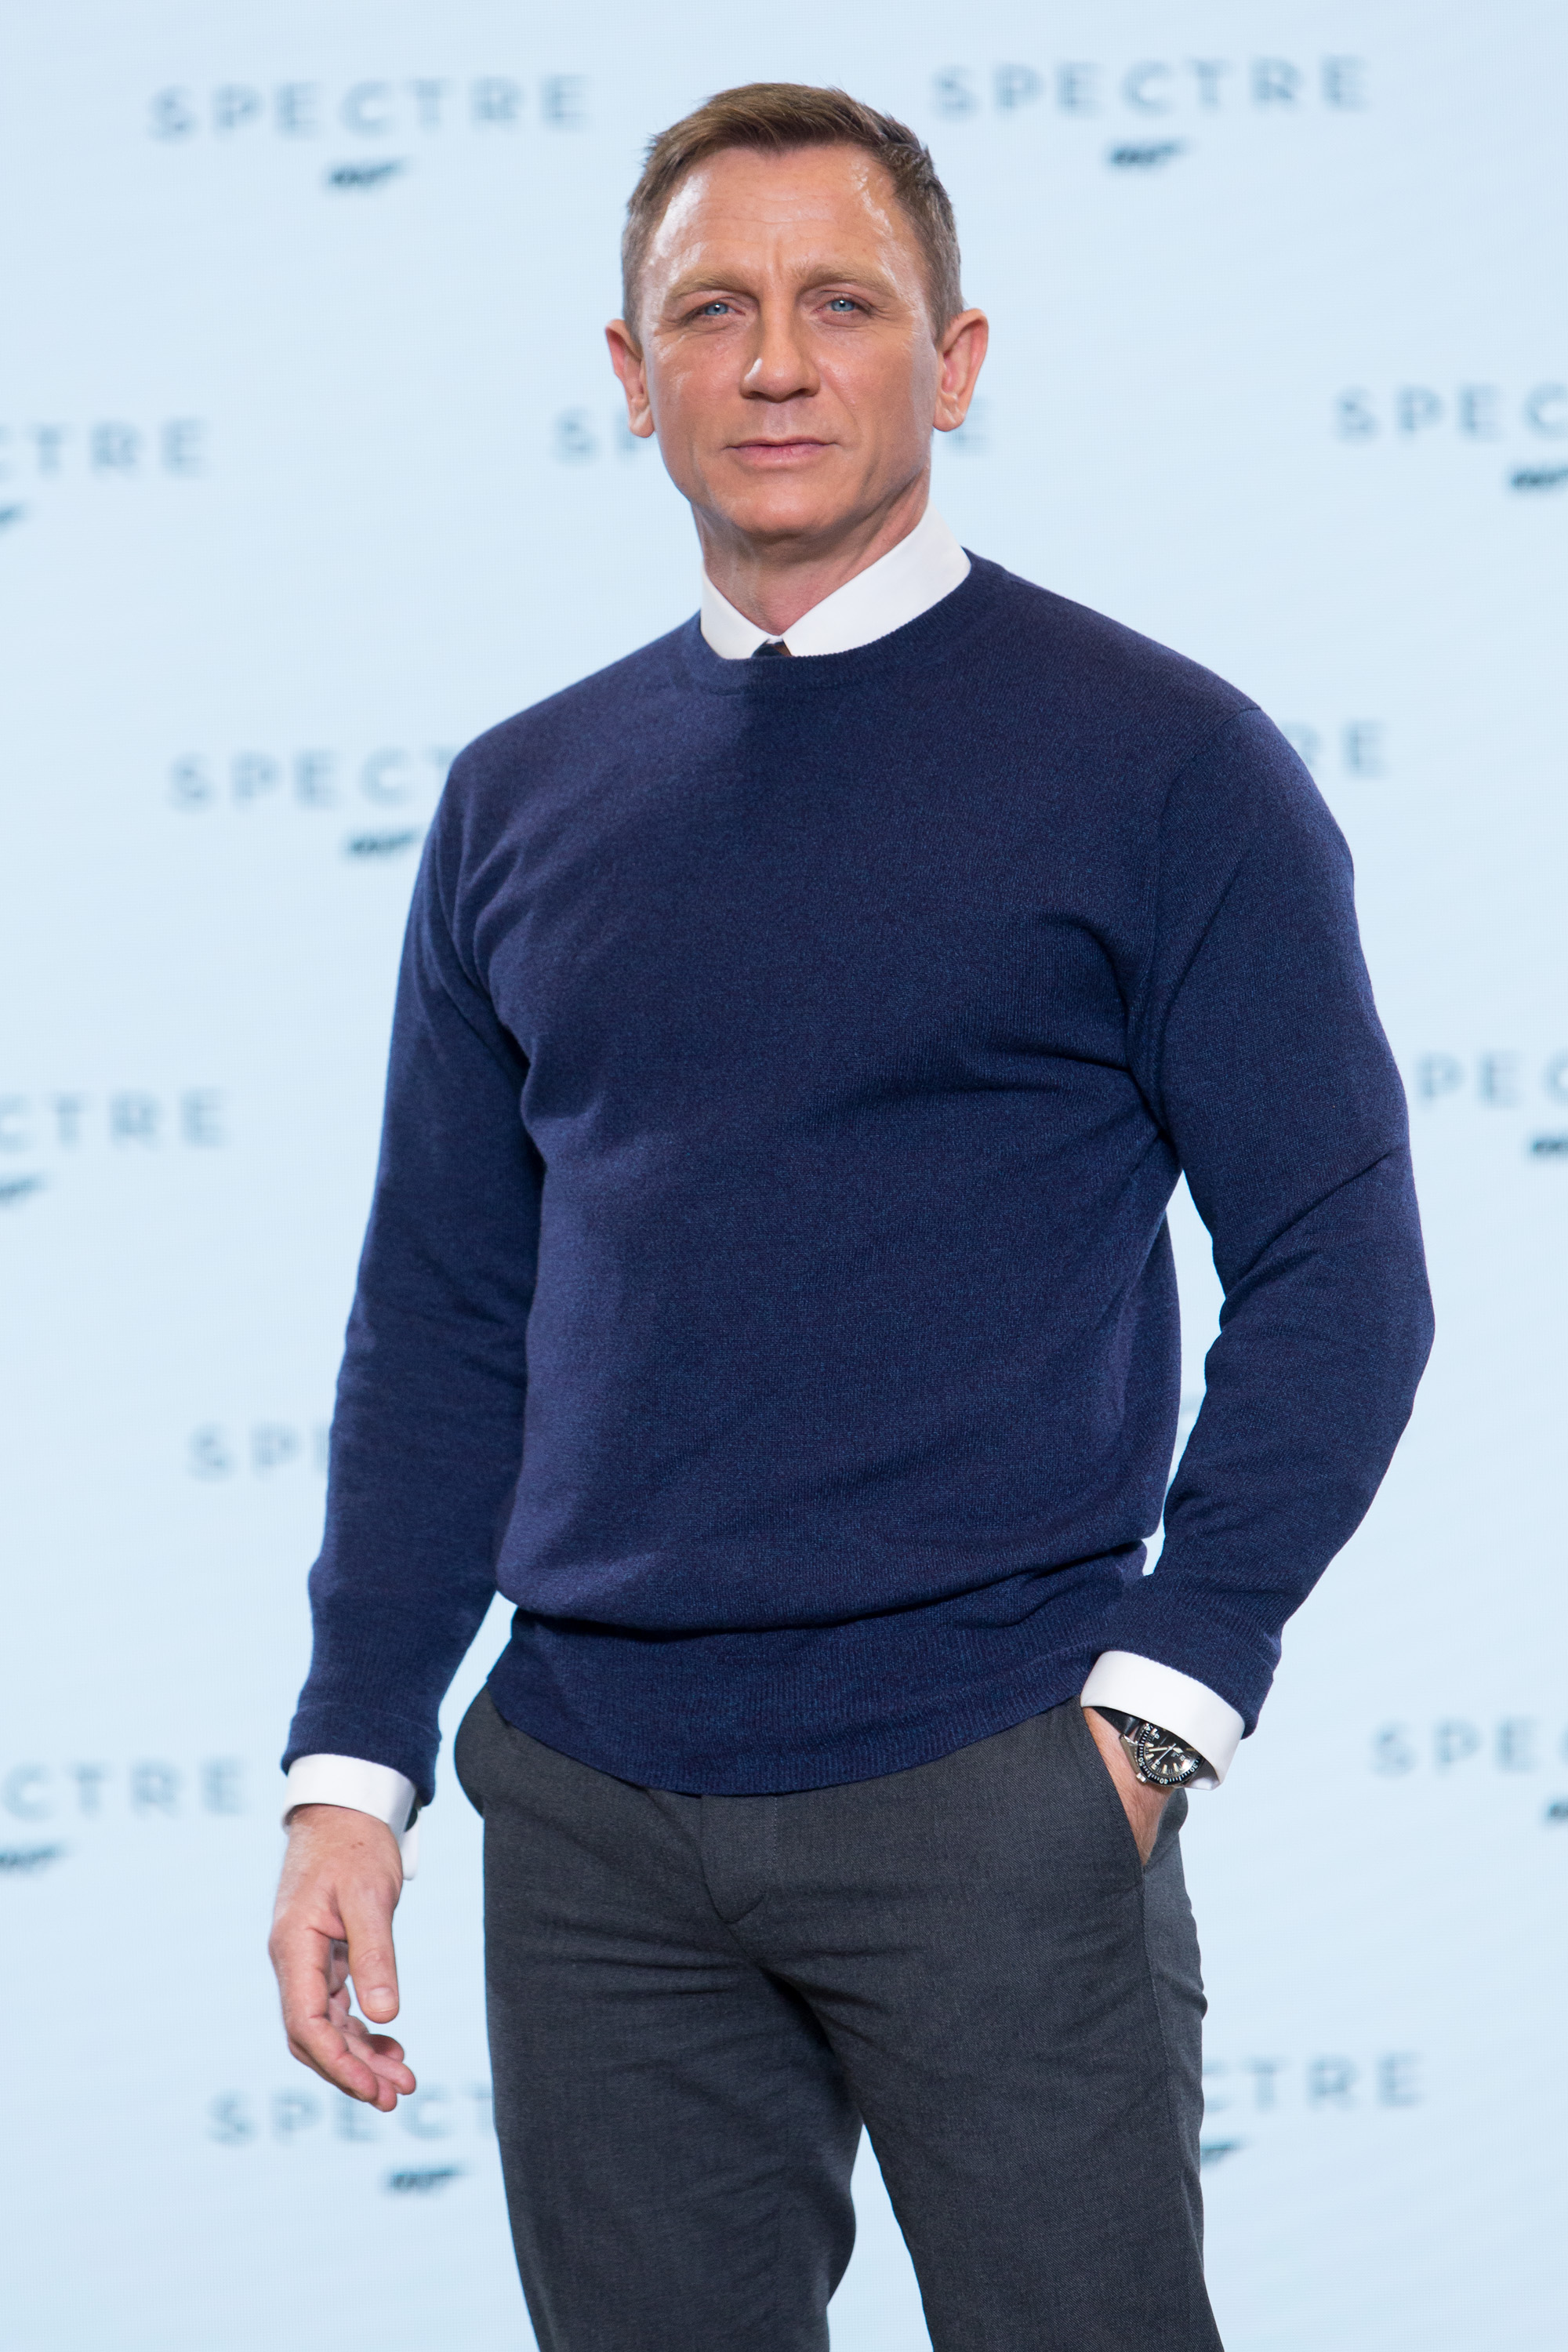 Daniel Craig | James Bond Wiki | FANDOM powered by Wikia